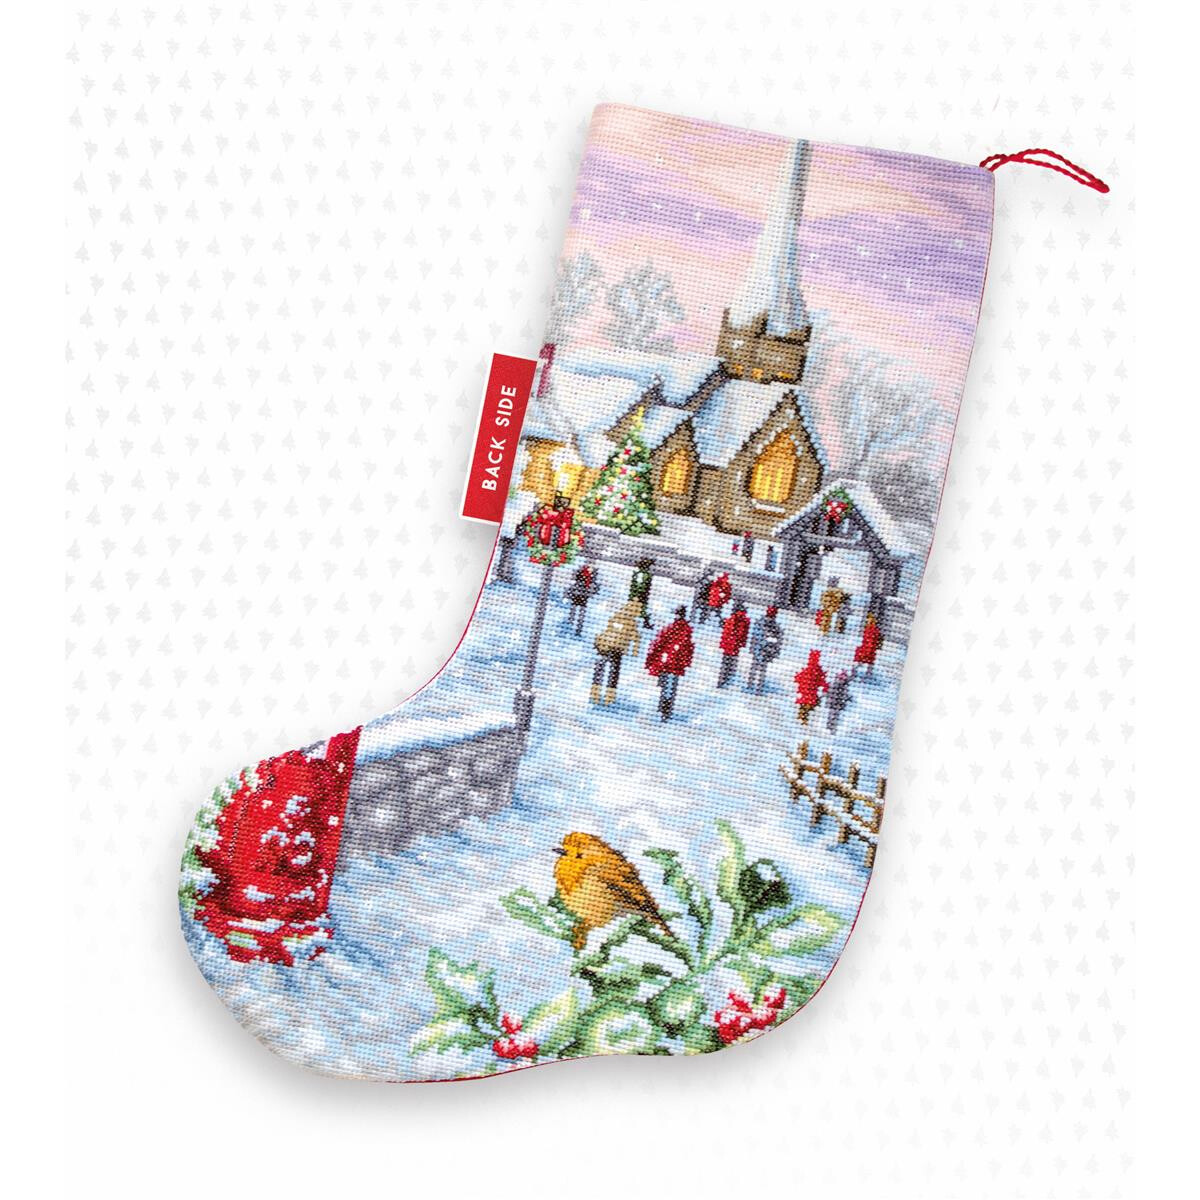 Una calza di Natale decorata con una scena di villaggio...